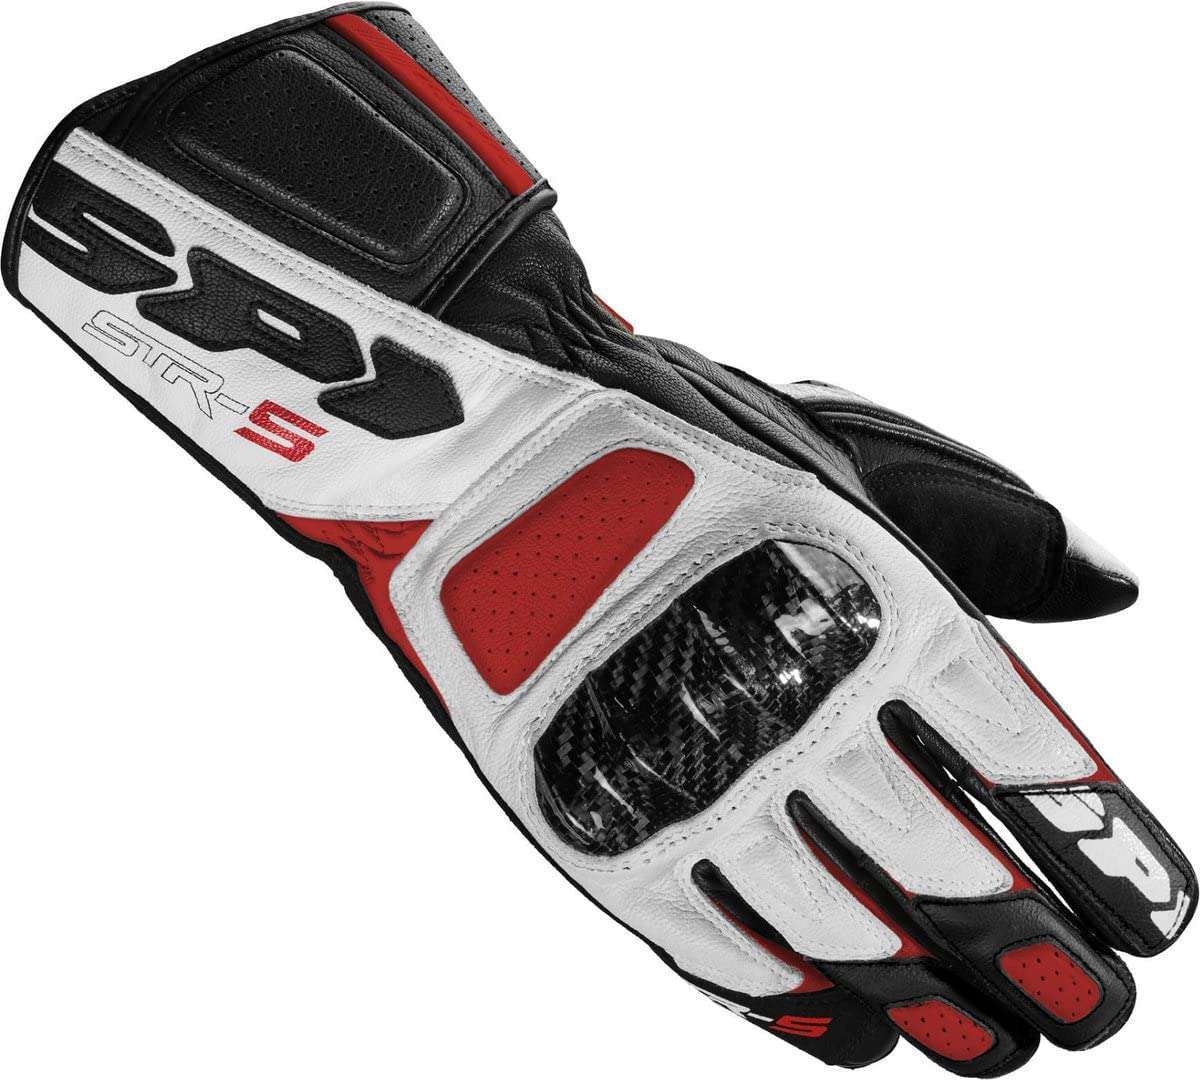 Les gants de moto Spidi STR-5